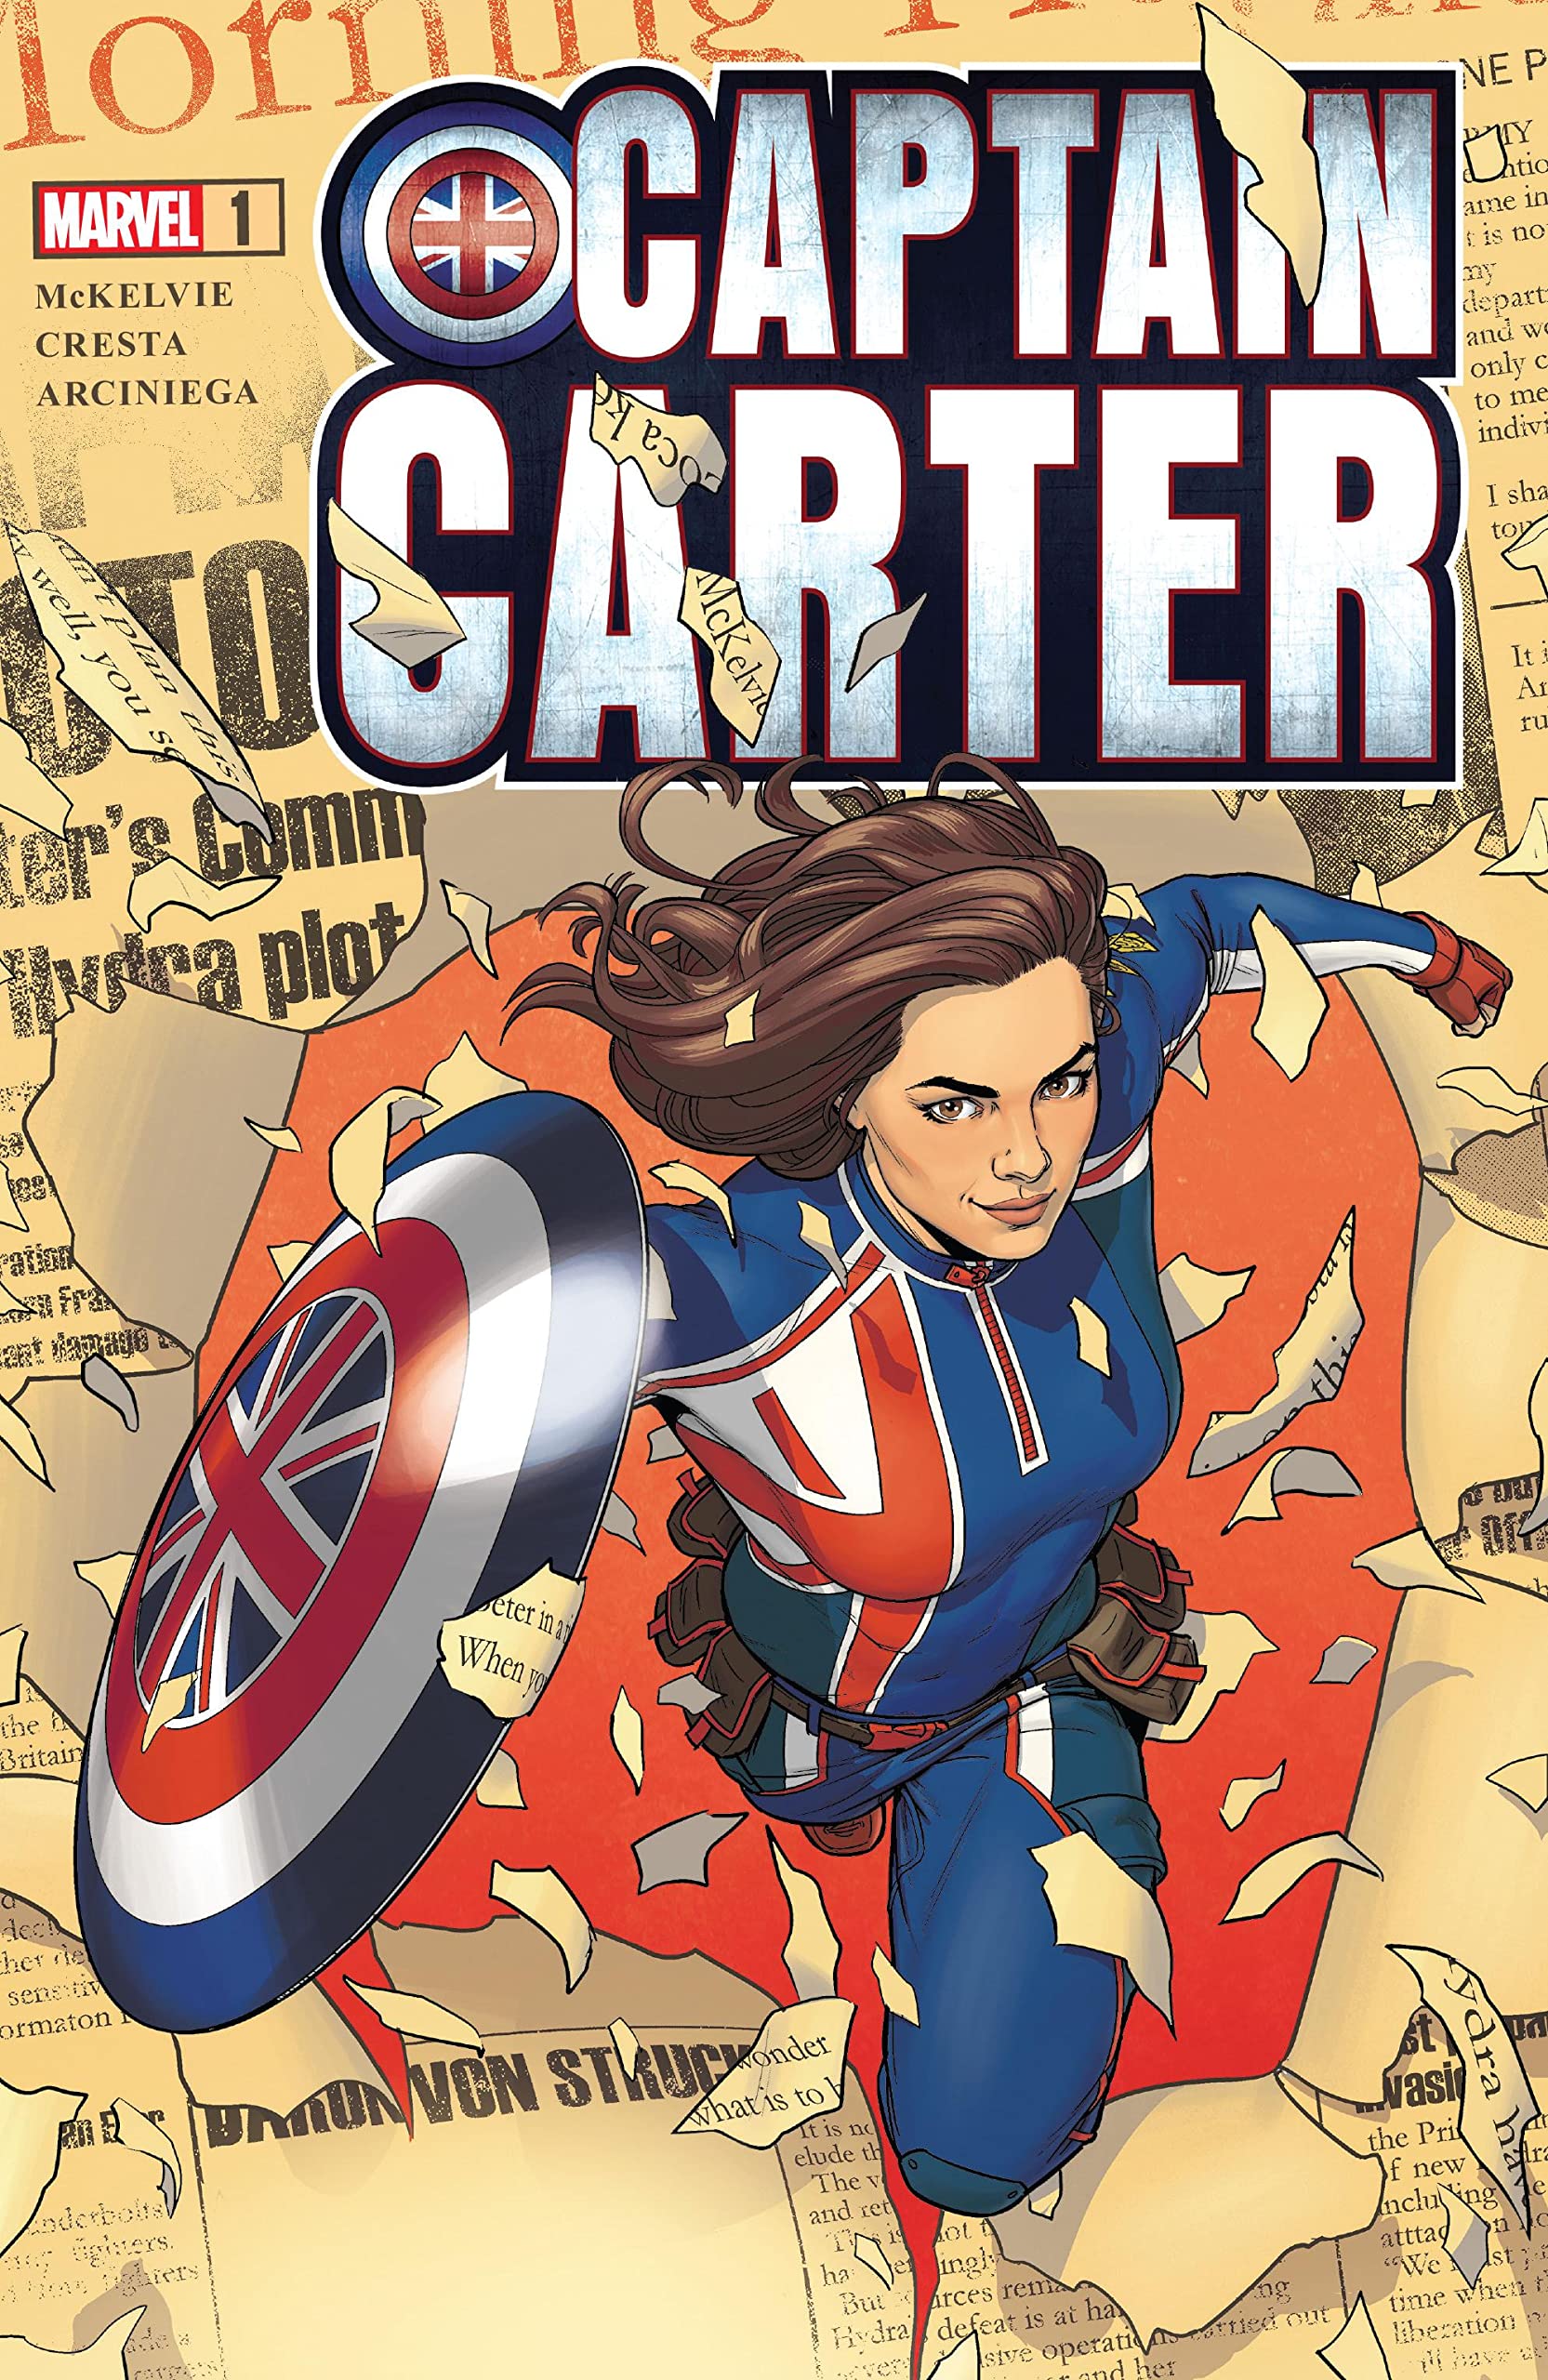 Captain carter